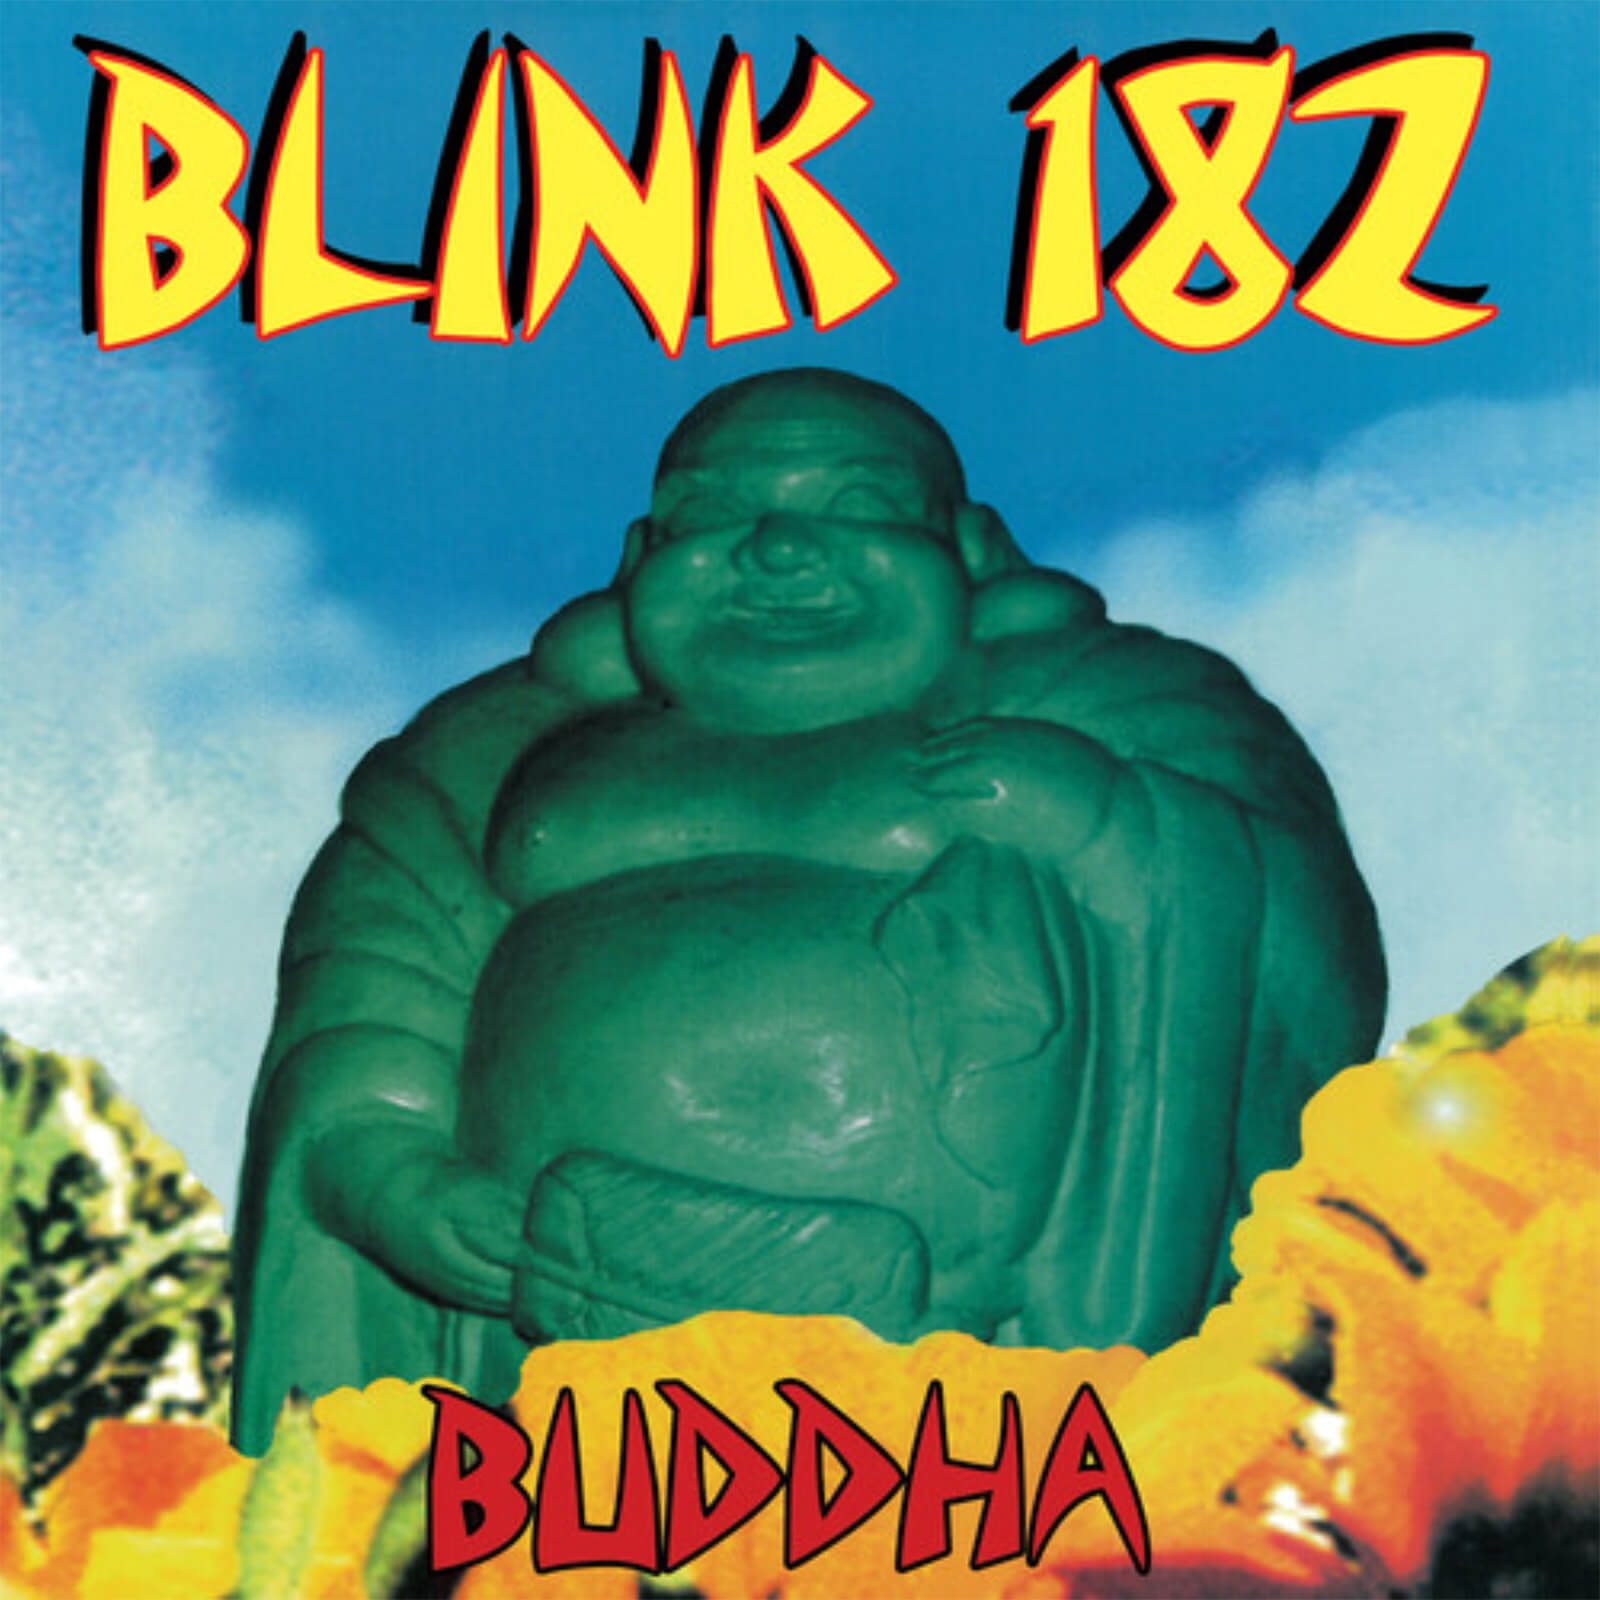 Blink-182 - Buddah Vinyl (Blue Haze)